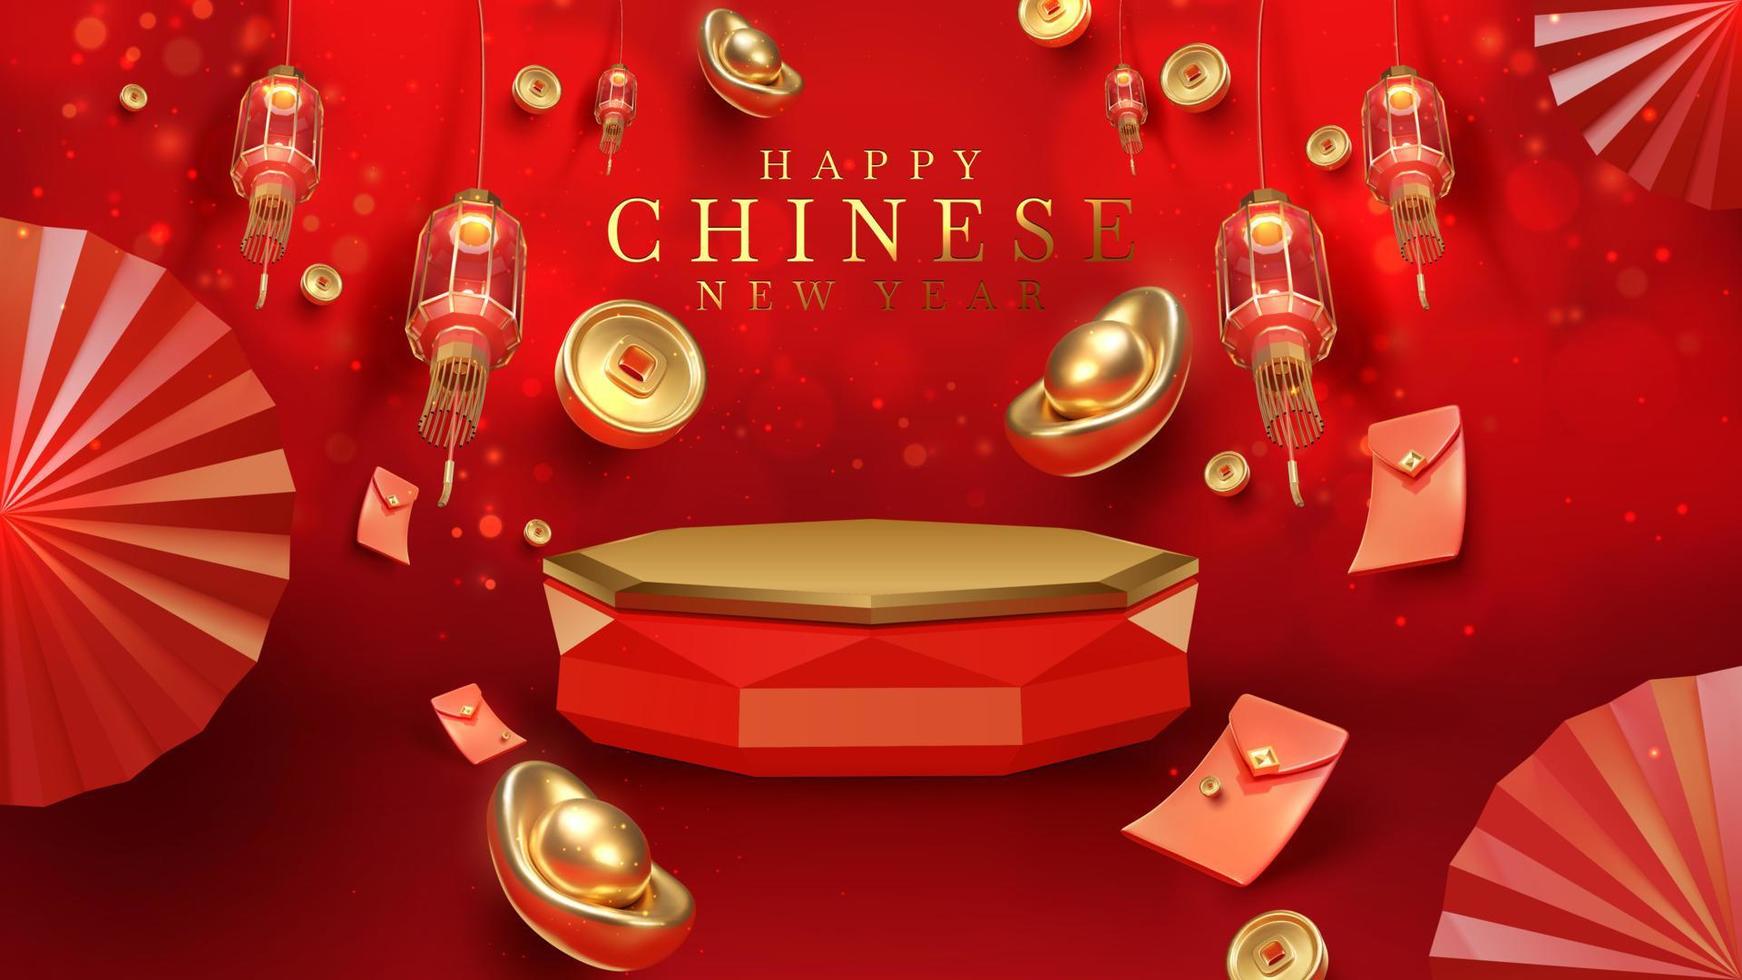 fundo de luxo vermelho com elemento de pódio de exibição de produto com ornamento de ano novo chinês realista 3d e decoração de efeito de luz brilhante e bokeh. ilustração vetorial. vetor